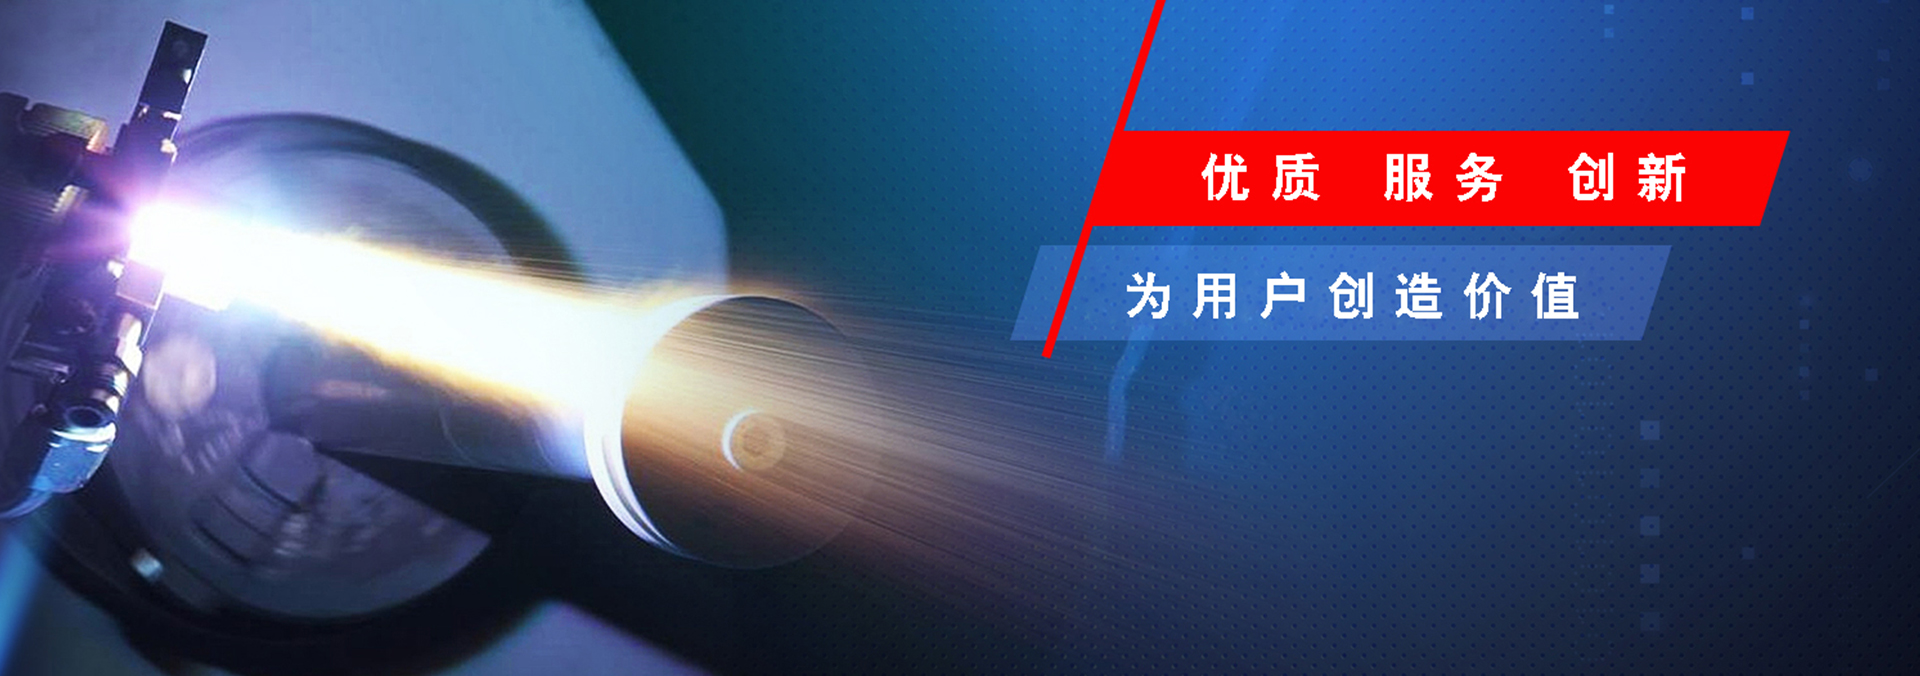 熱烈慶祝哈爾濱霈澤材料科技有限公司網站建設成功